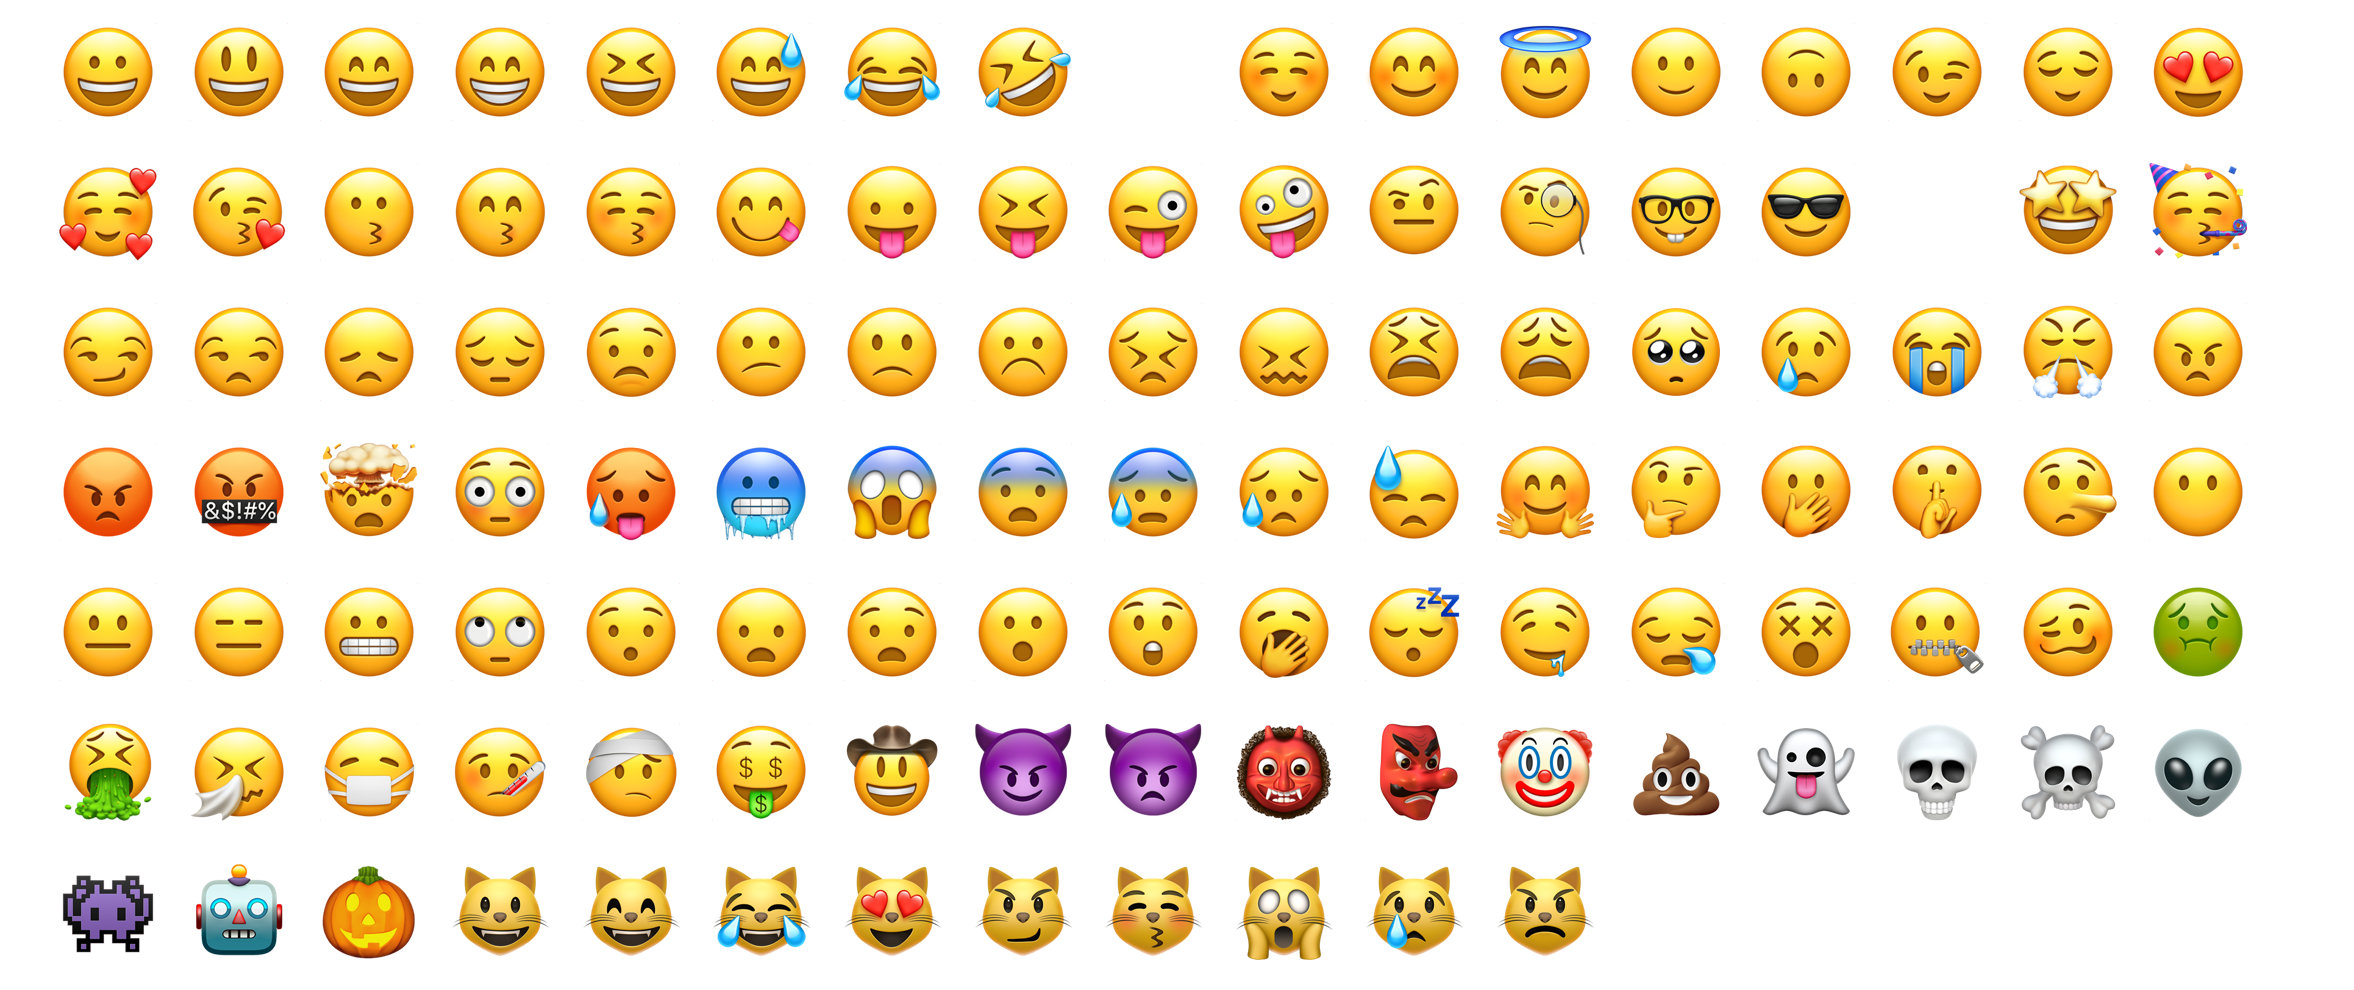 苹果emoji表情对应文字图片